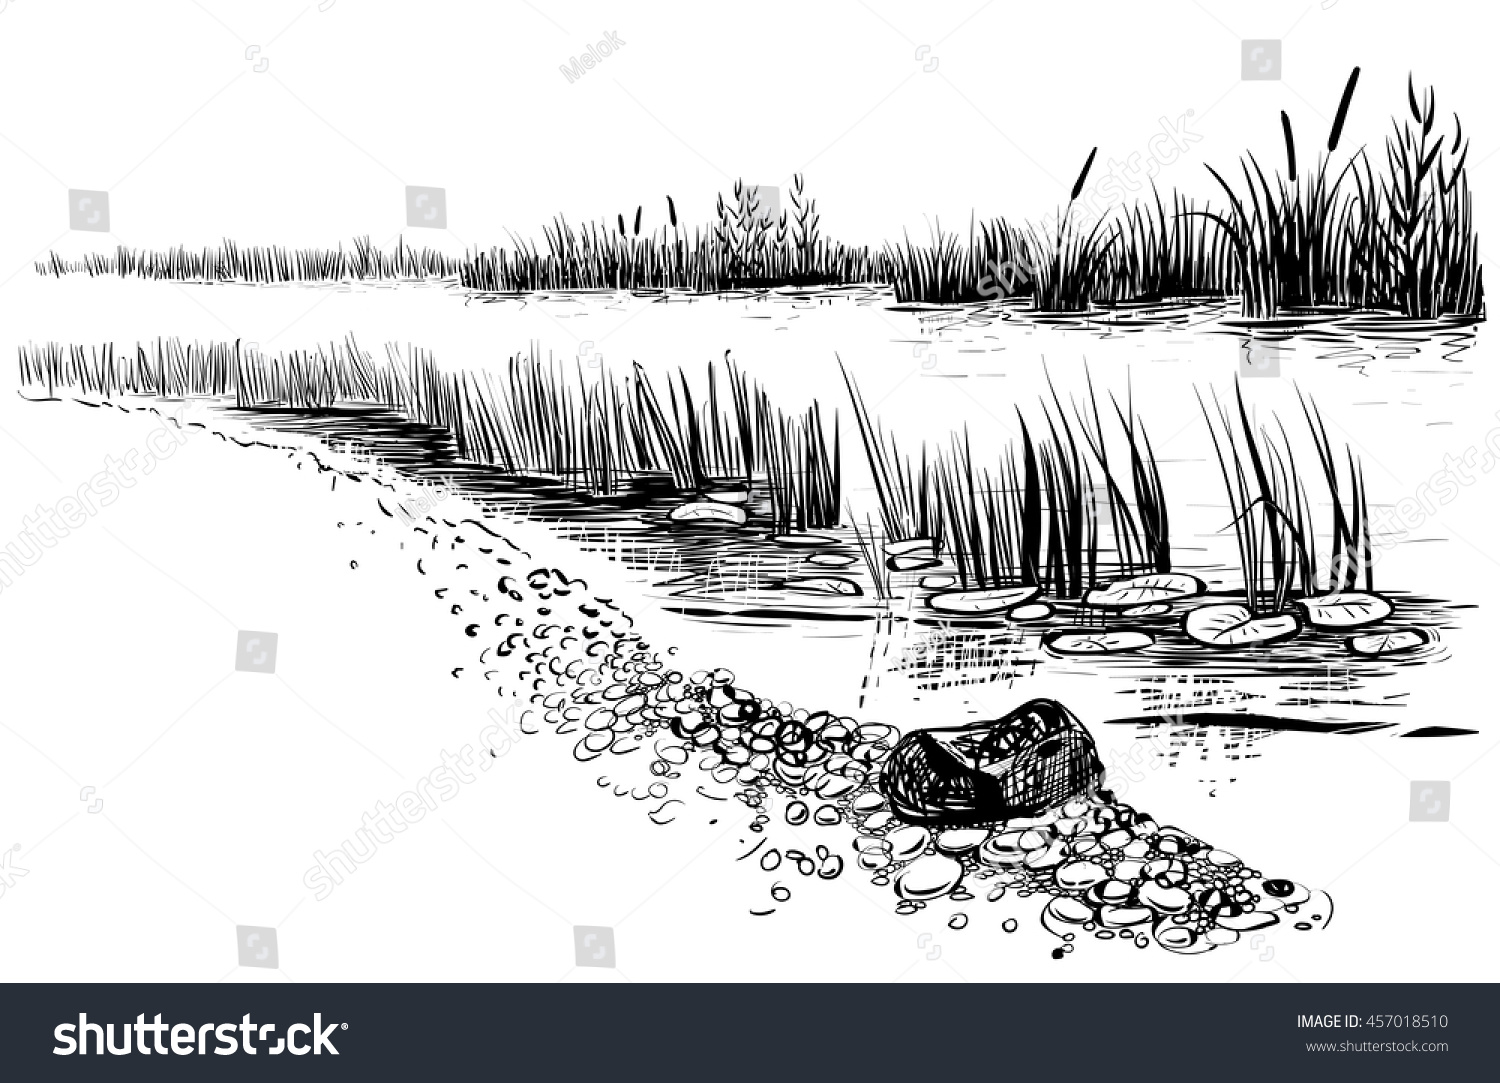 川の風景を描いた白黒のベクター画像イラスト 葦と尾を持つ川の岸 スケッチスタイル のベクター画像素材 ロイヤリティフリー